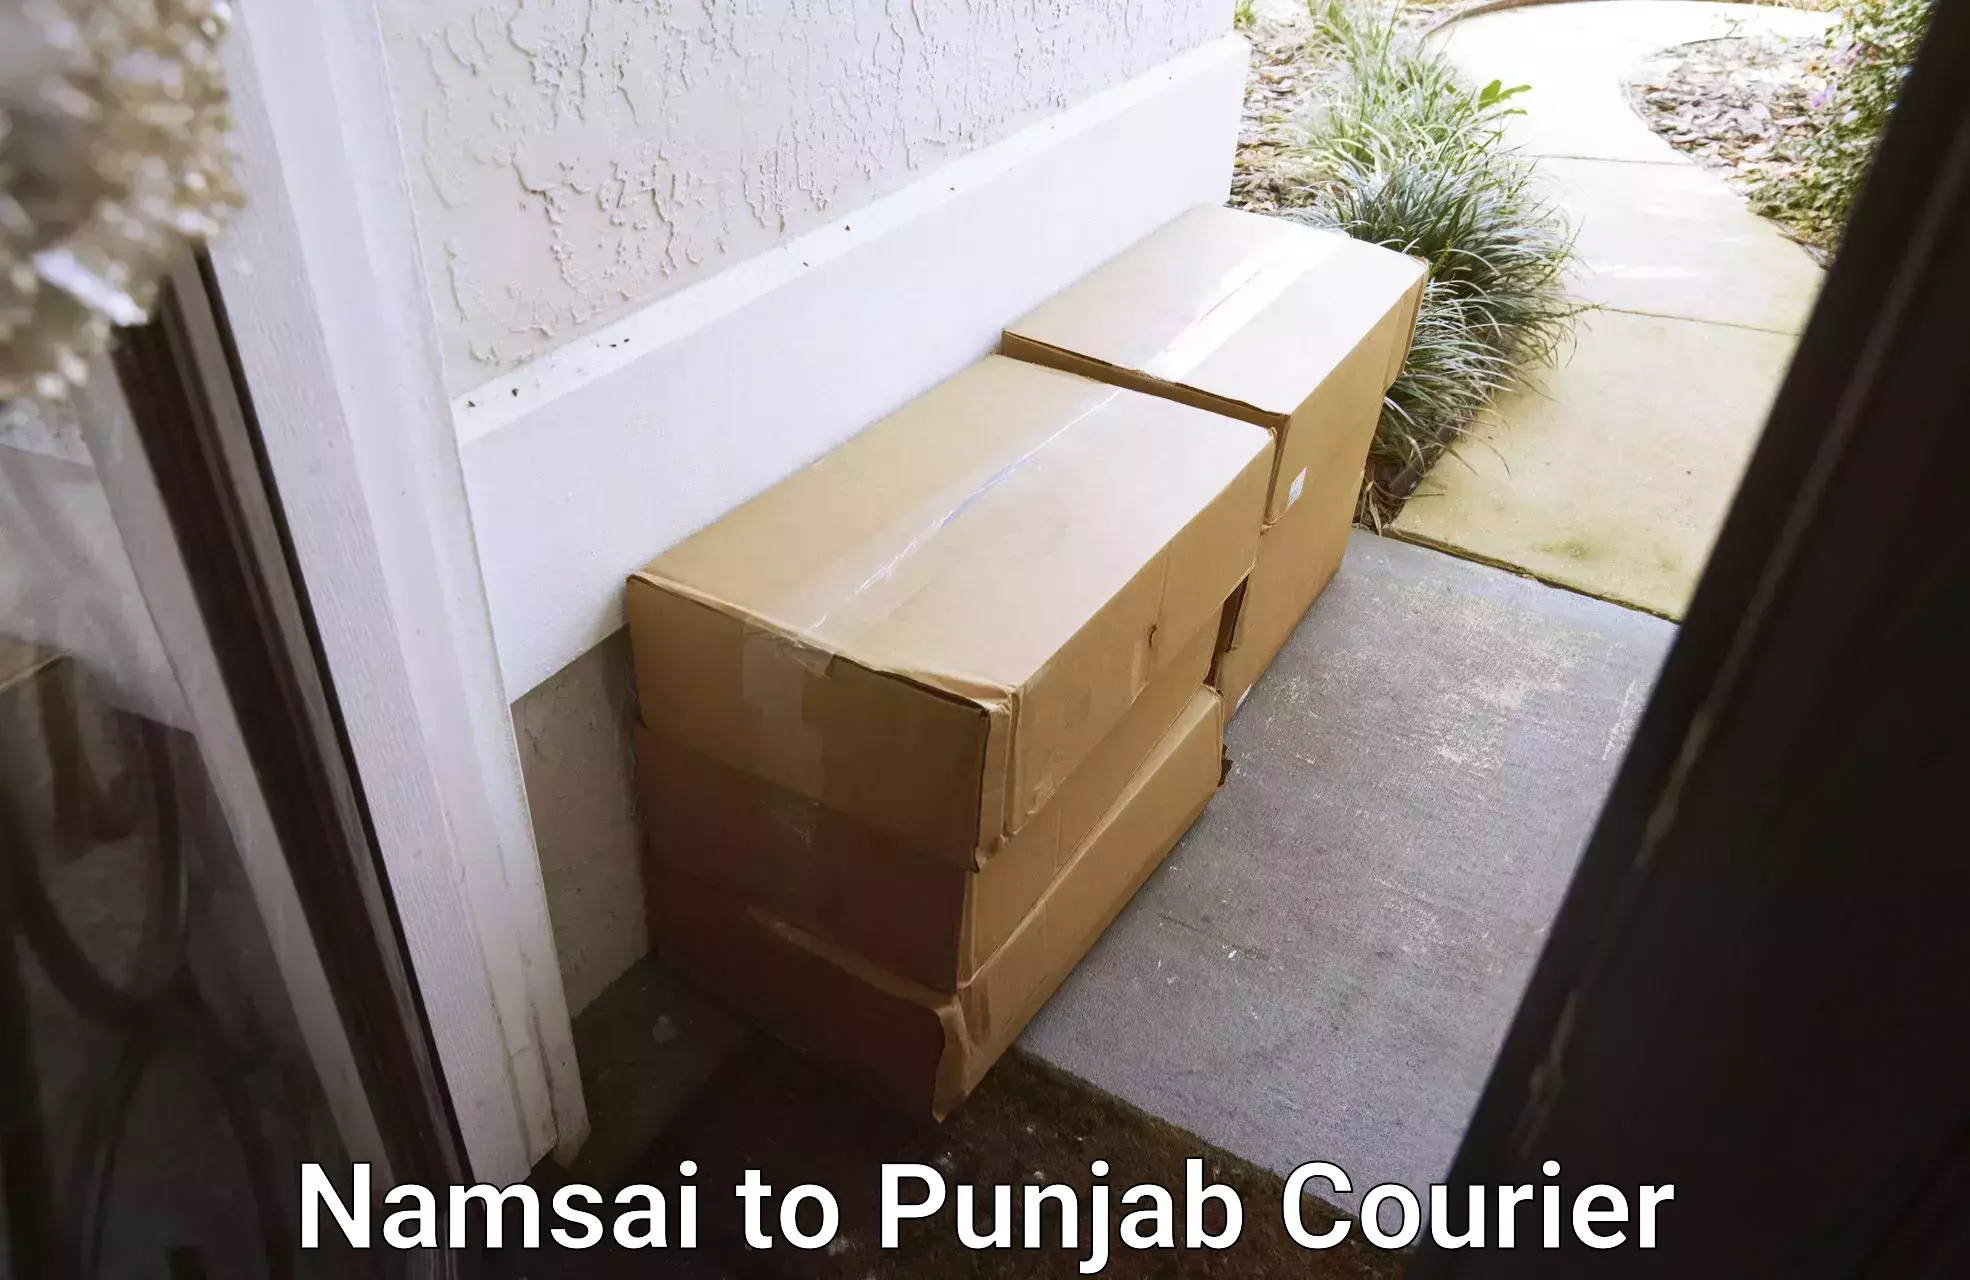 Efficient freight service Namsai to Punjab